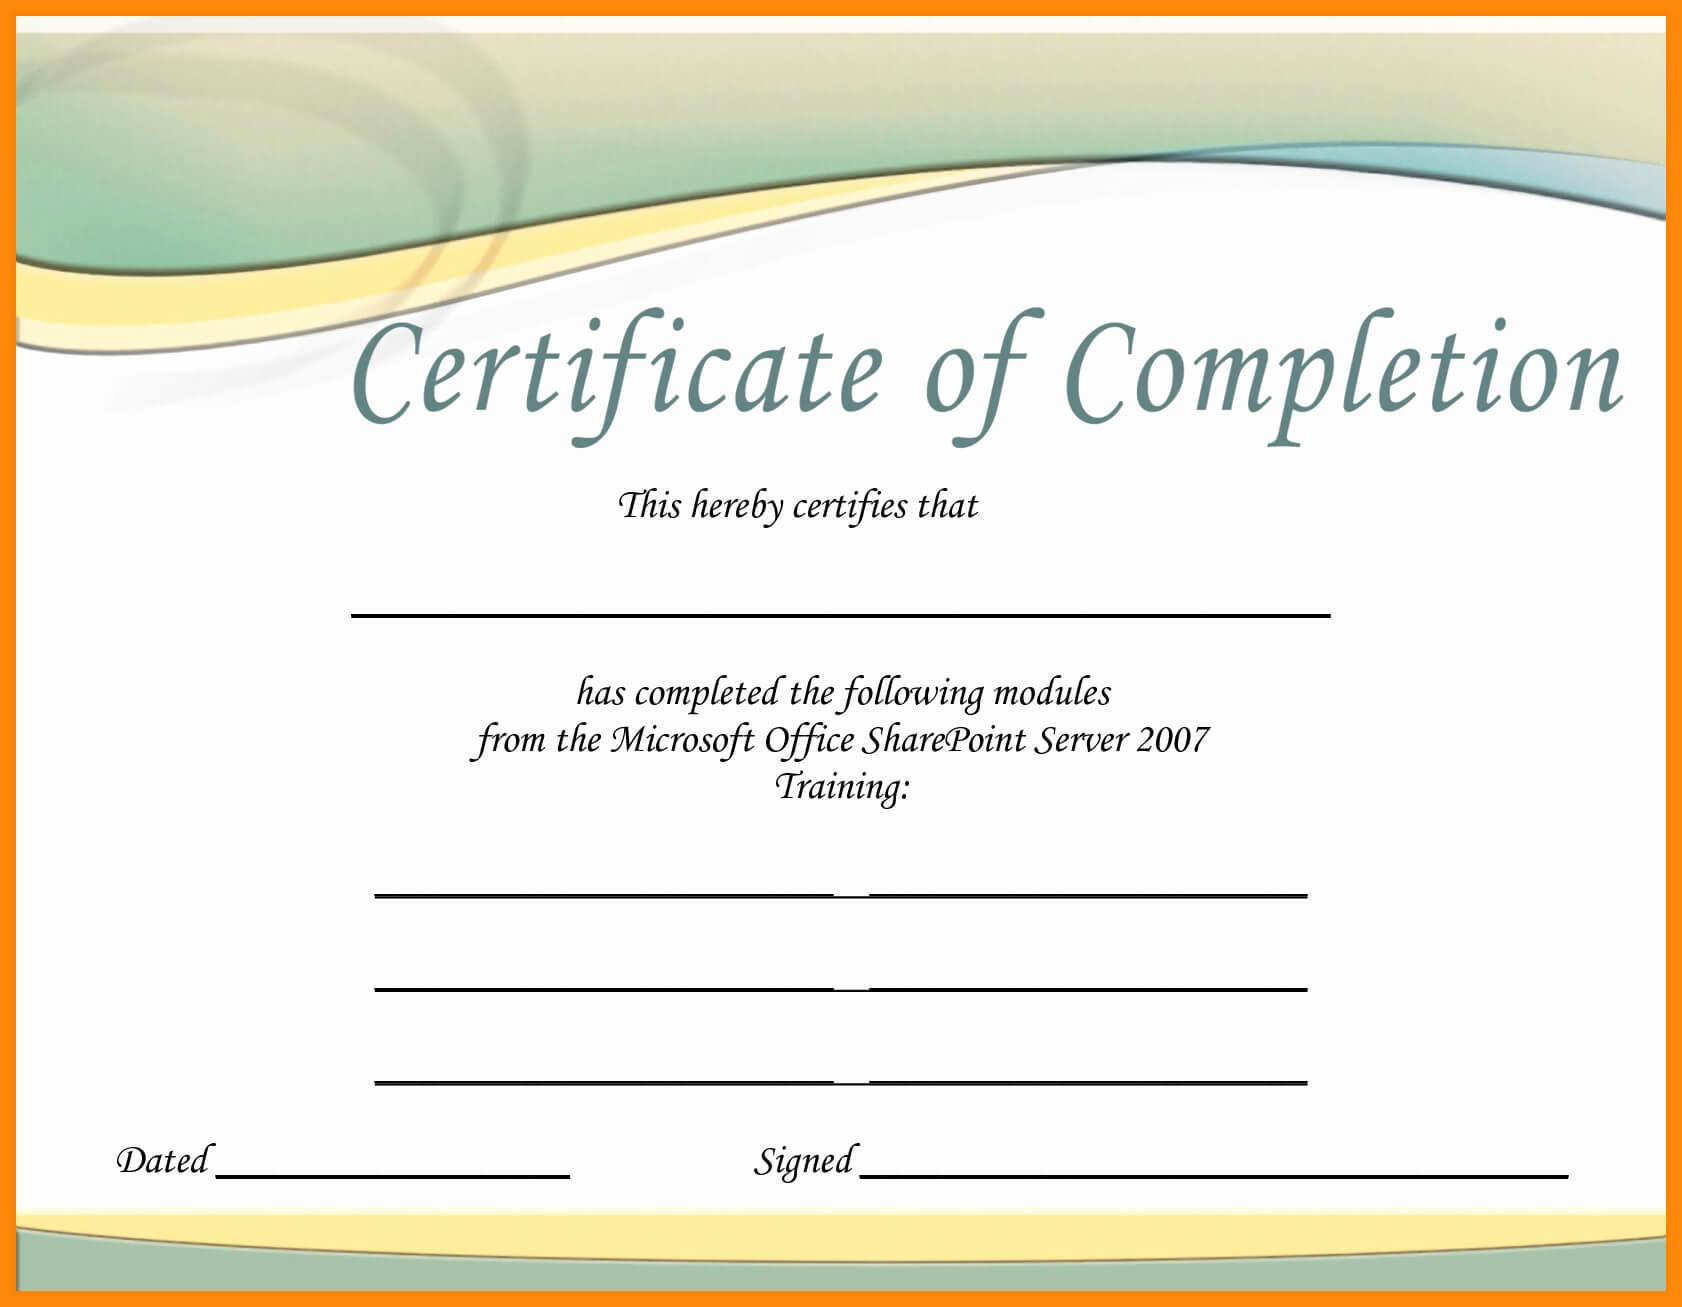 Word 2007 Certificate Template - Lara.expolicenciaslatam.co For Free Certificate Templates For Word 2007